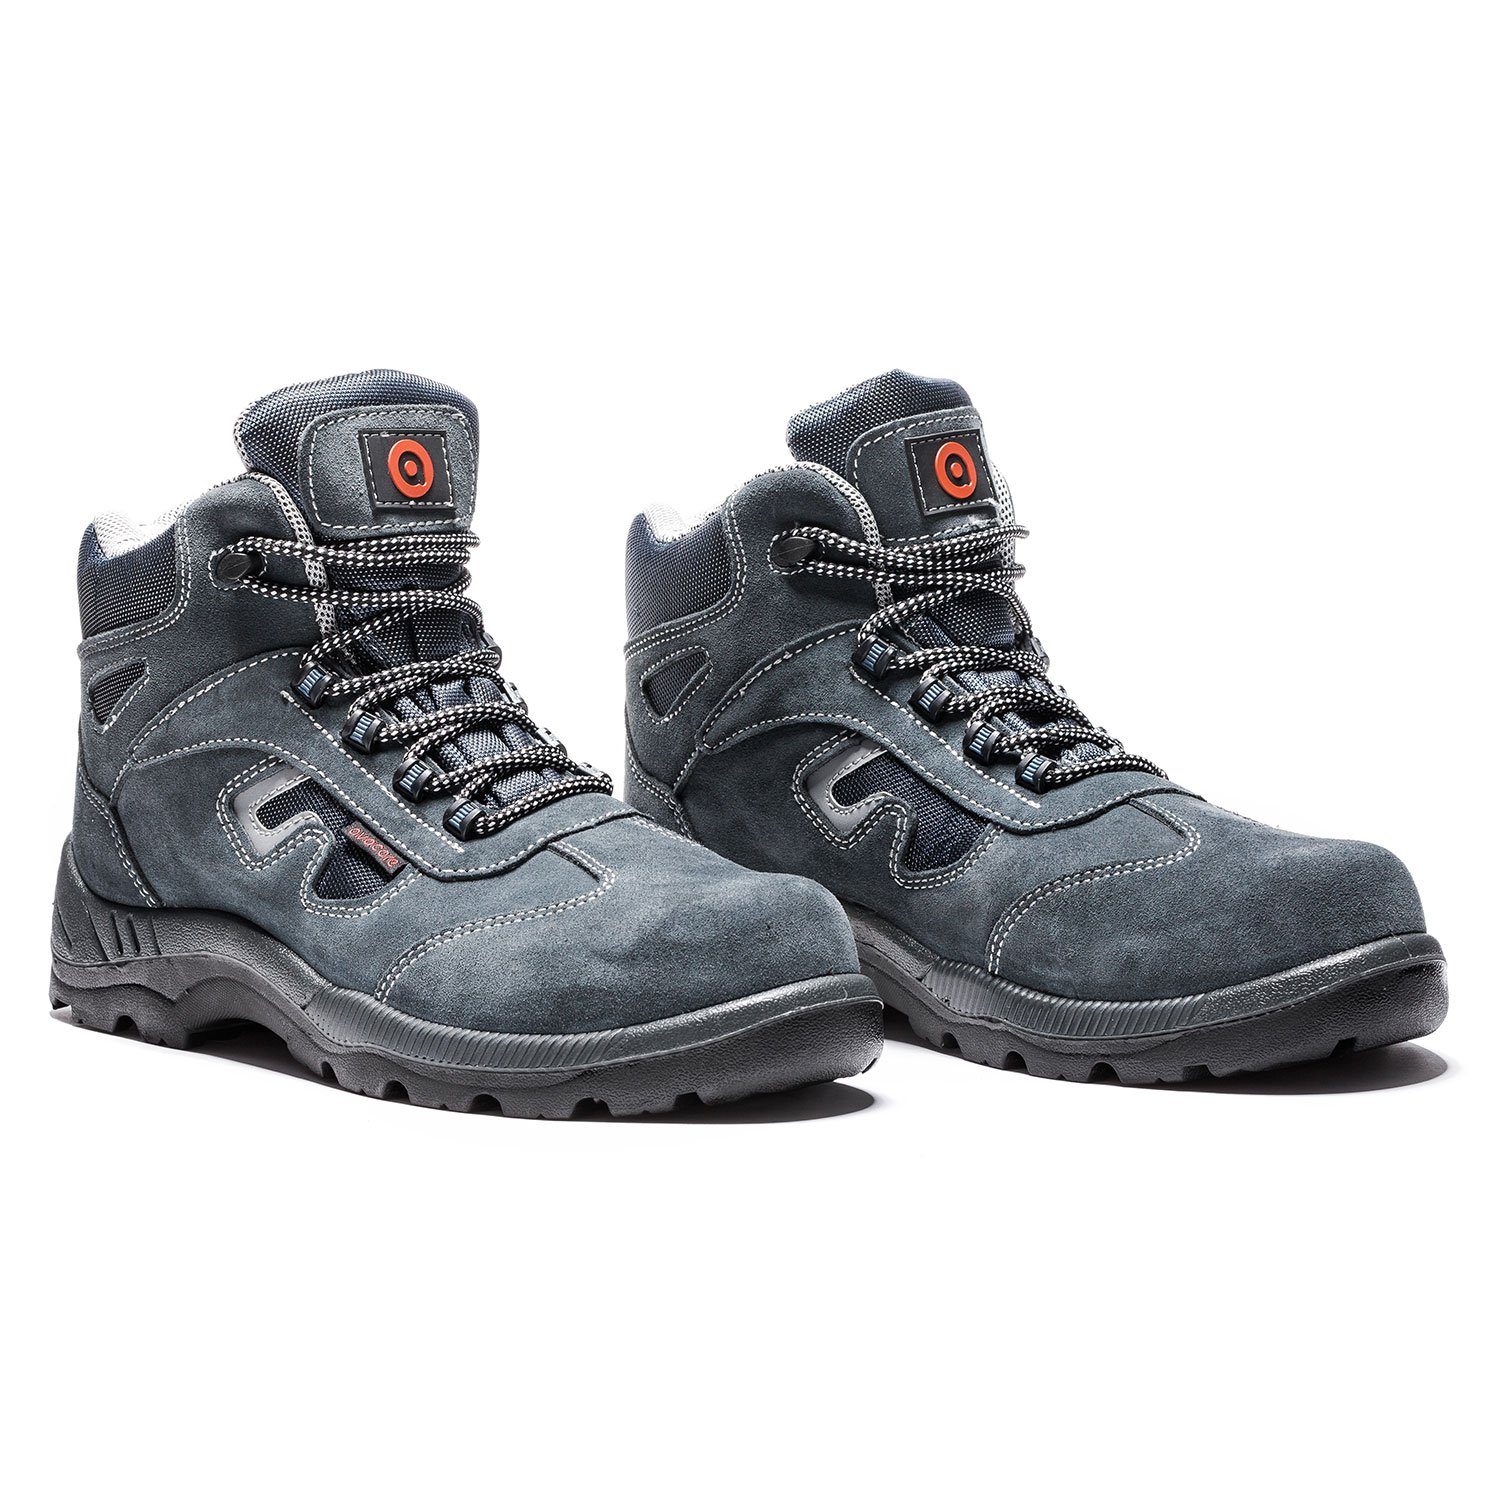 Schuhe Sicherheitsschuhe Avacore Prama Arbeitsschuh Doppelte Kälte-Isolierung, Composite-Verstärkungen, S1P-Sicherheitsklasse